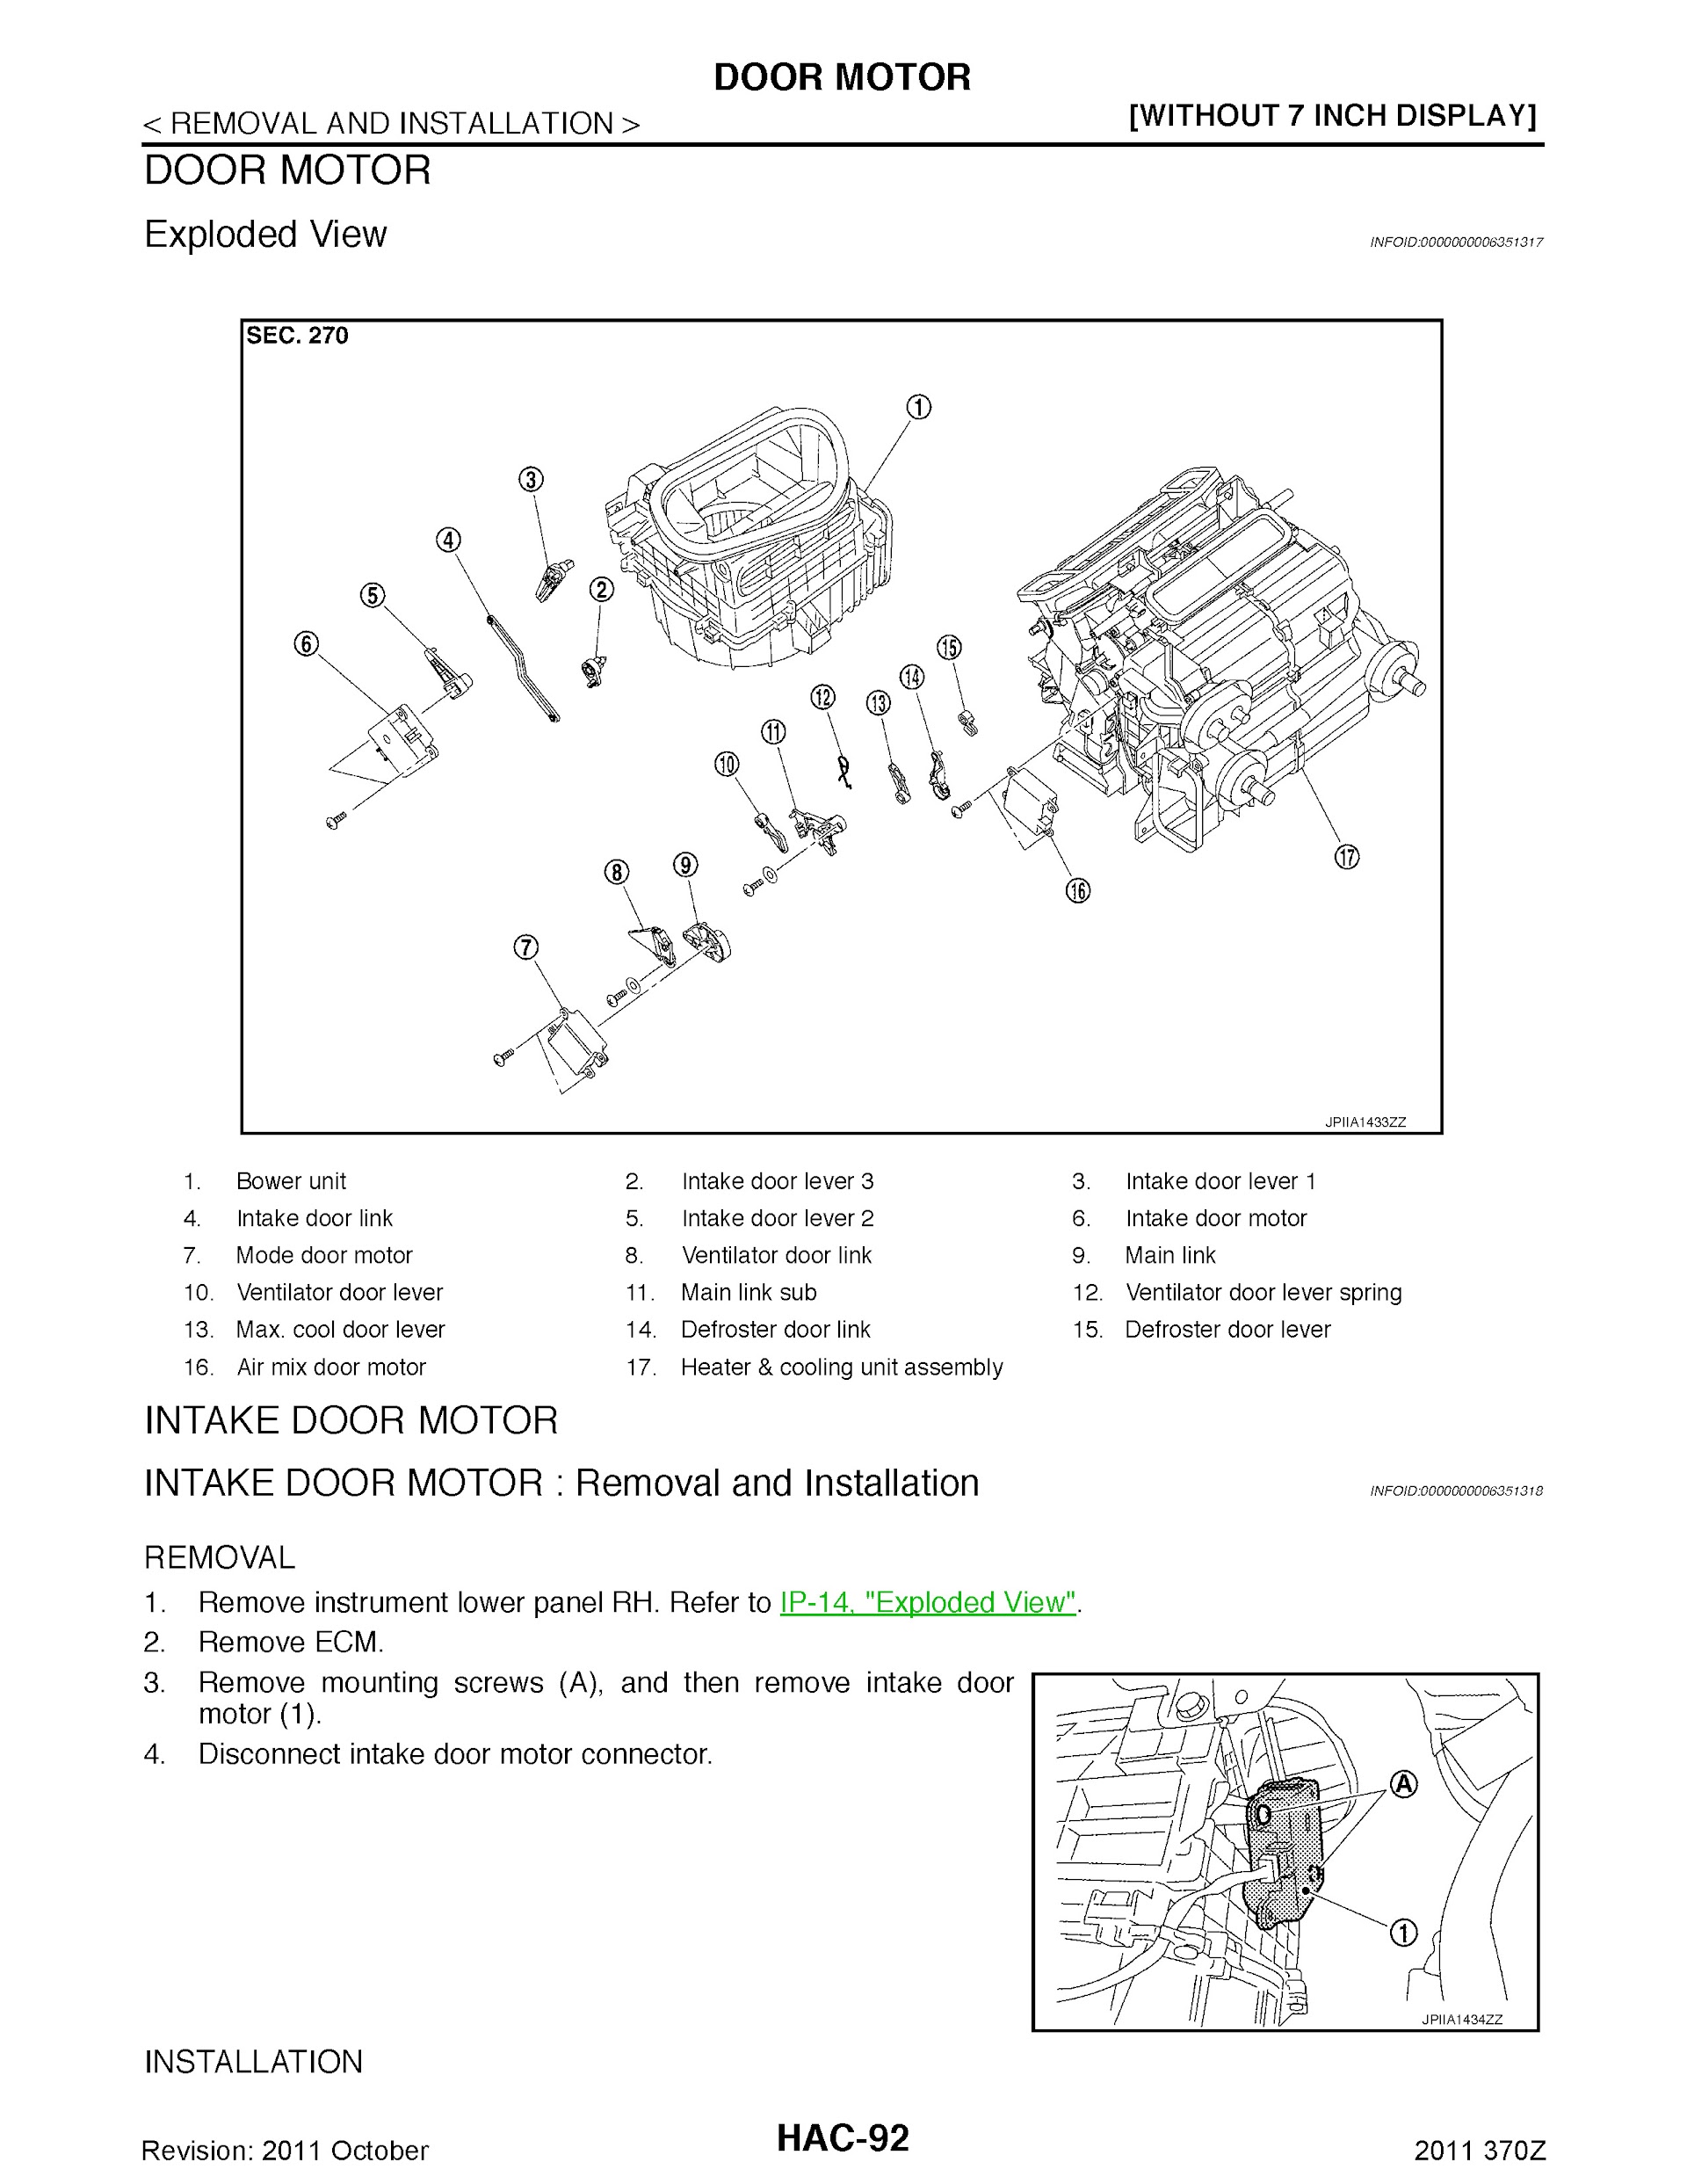 2011 Nissan 370Z Repair Manual